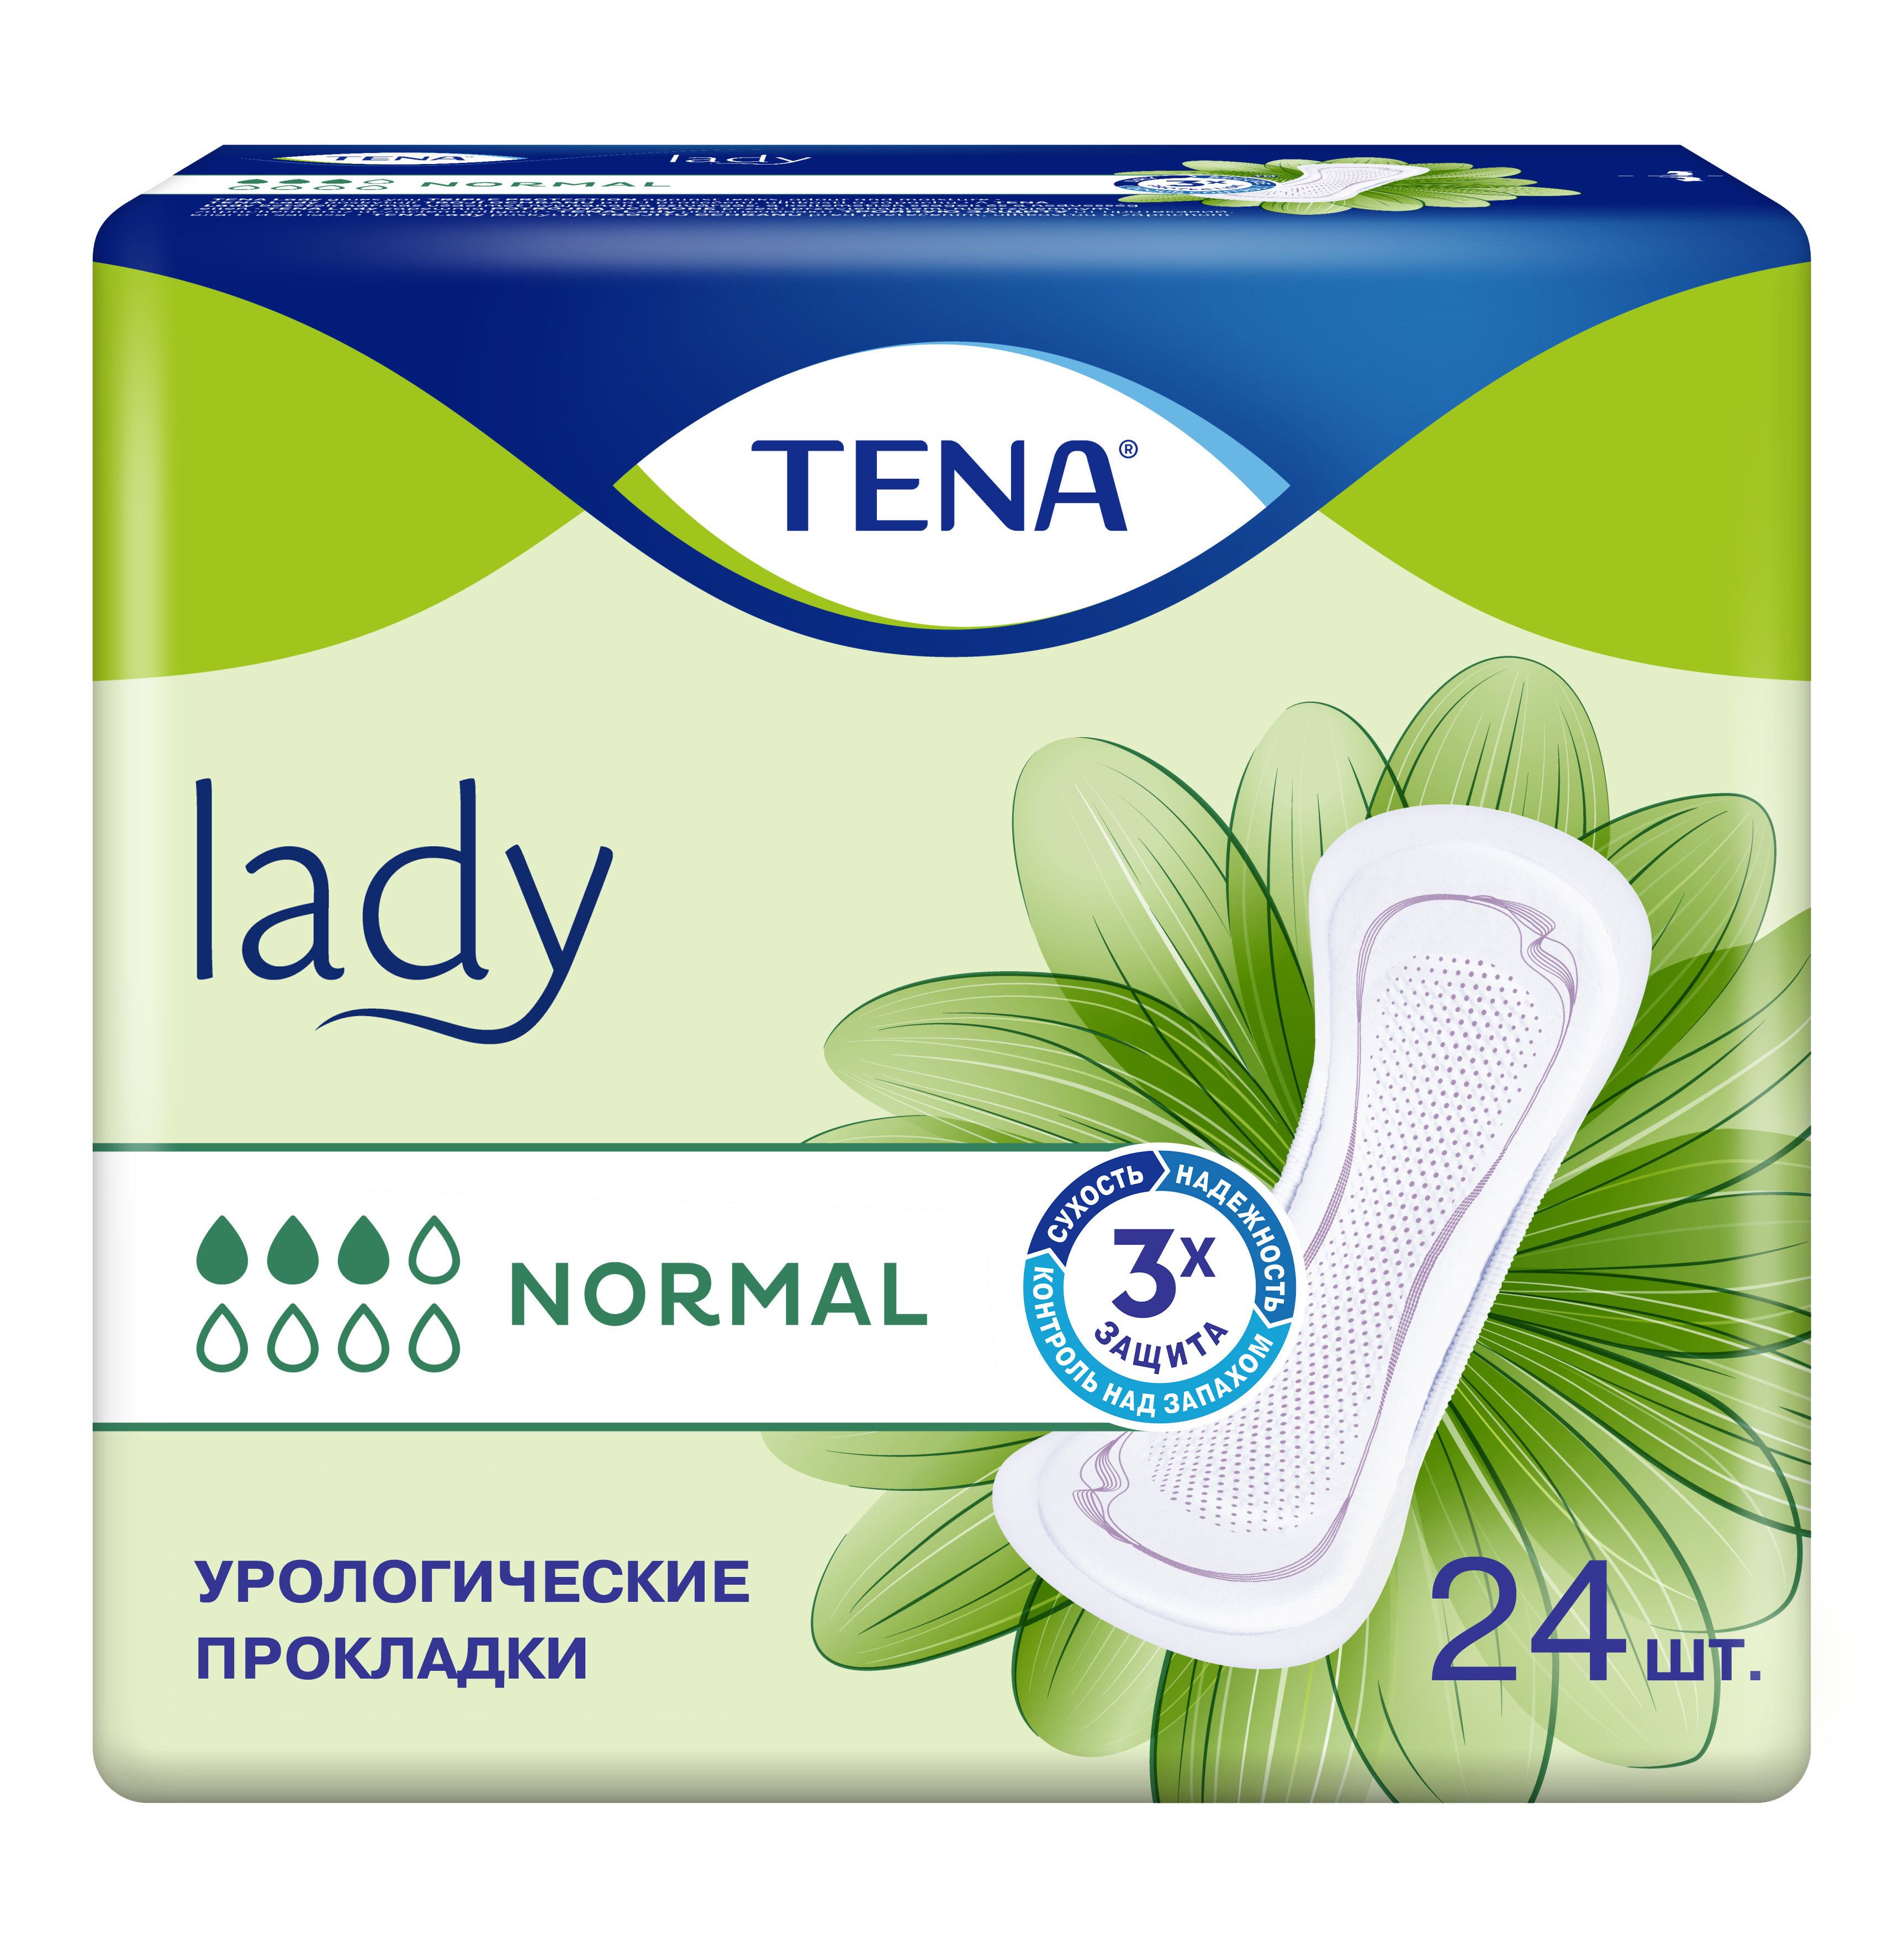 Купить Урологические прокладки TENA Lady Normal 24 шт.